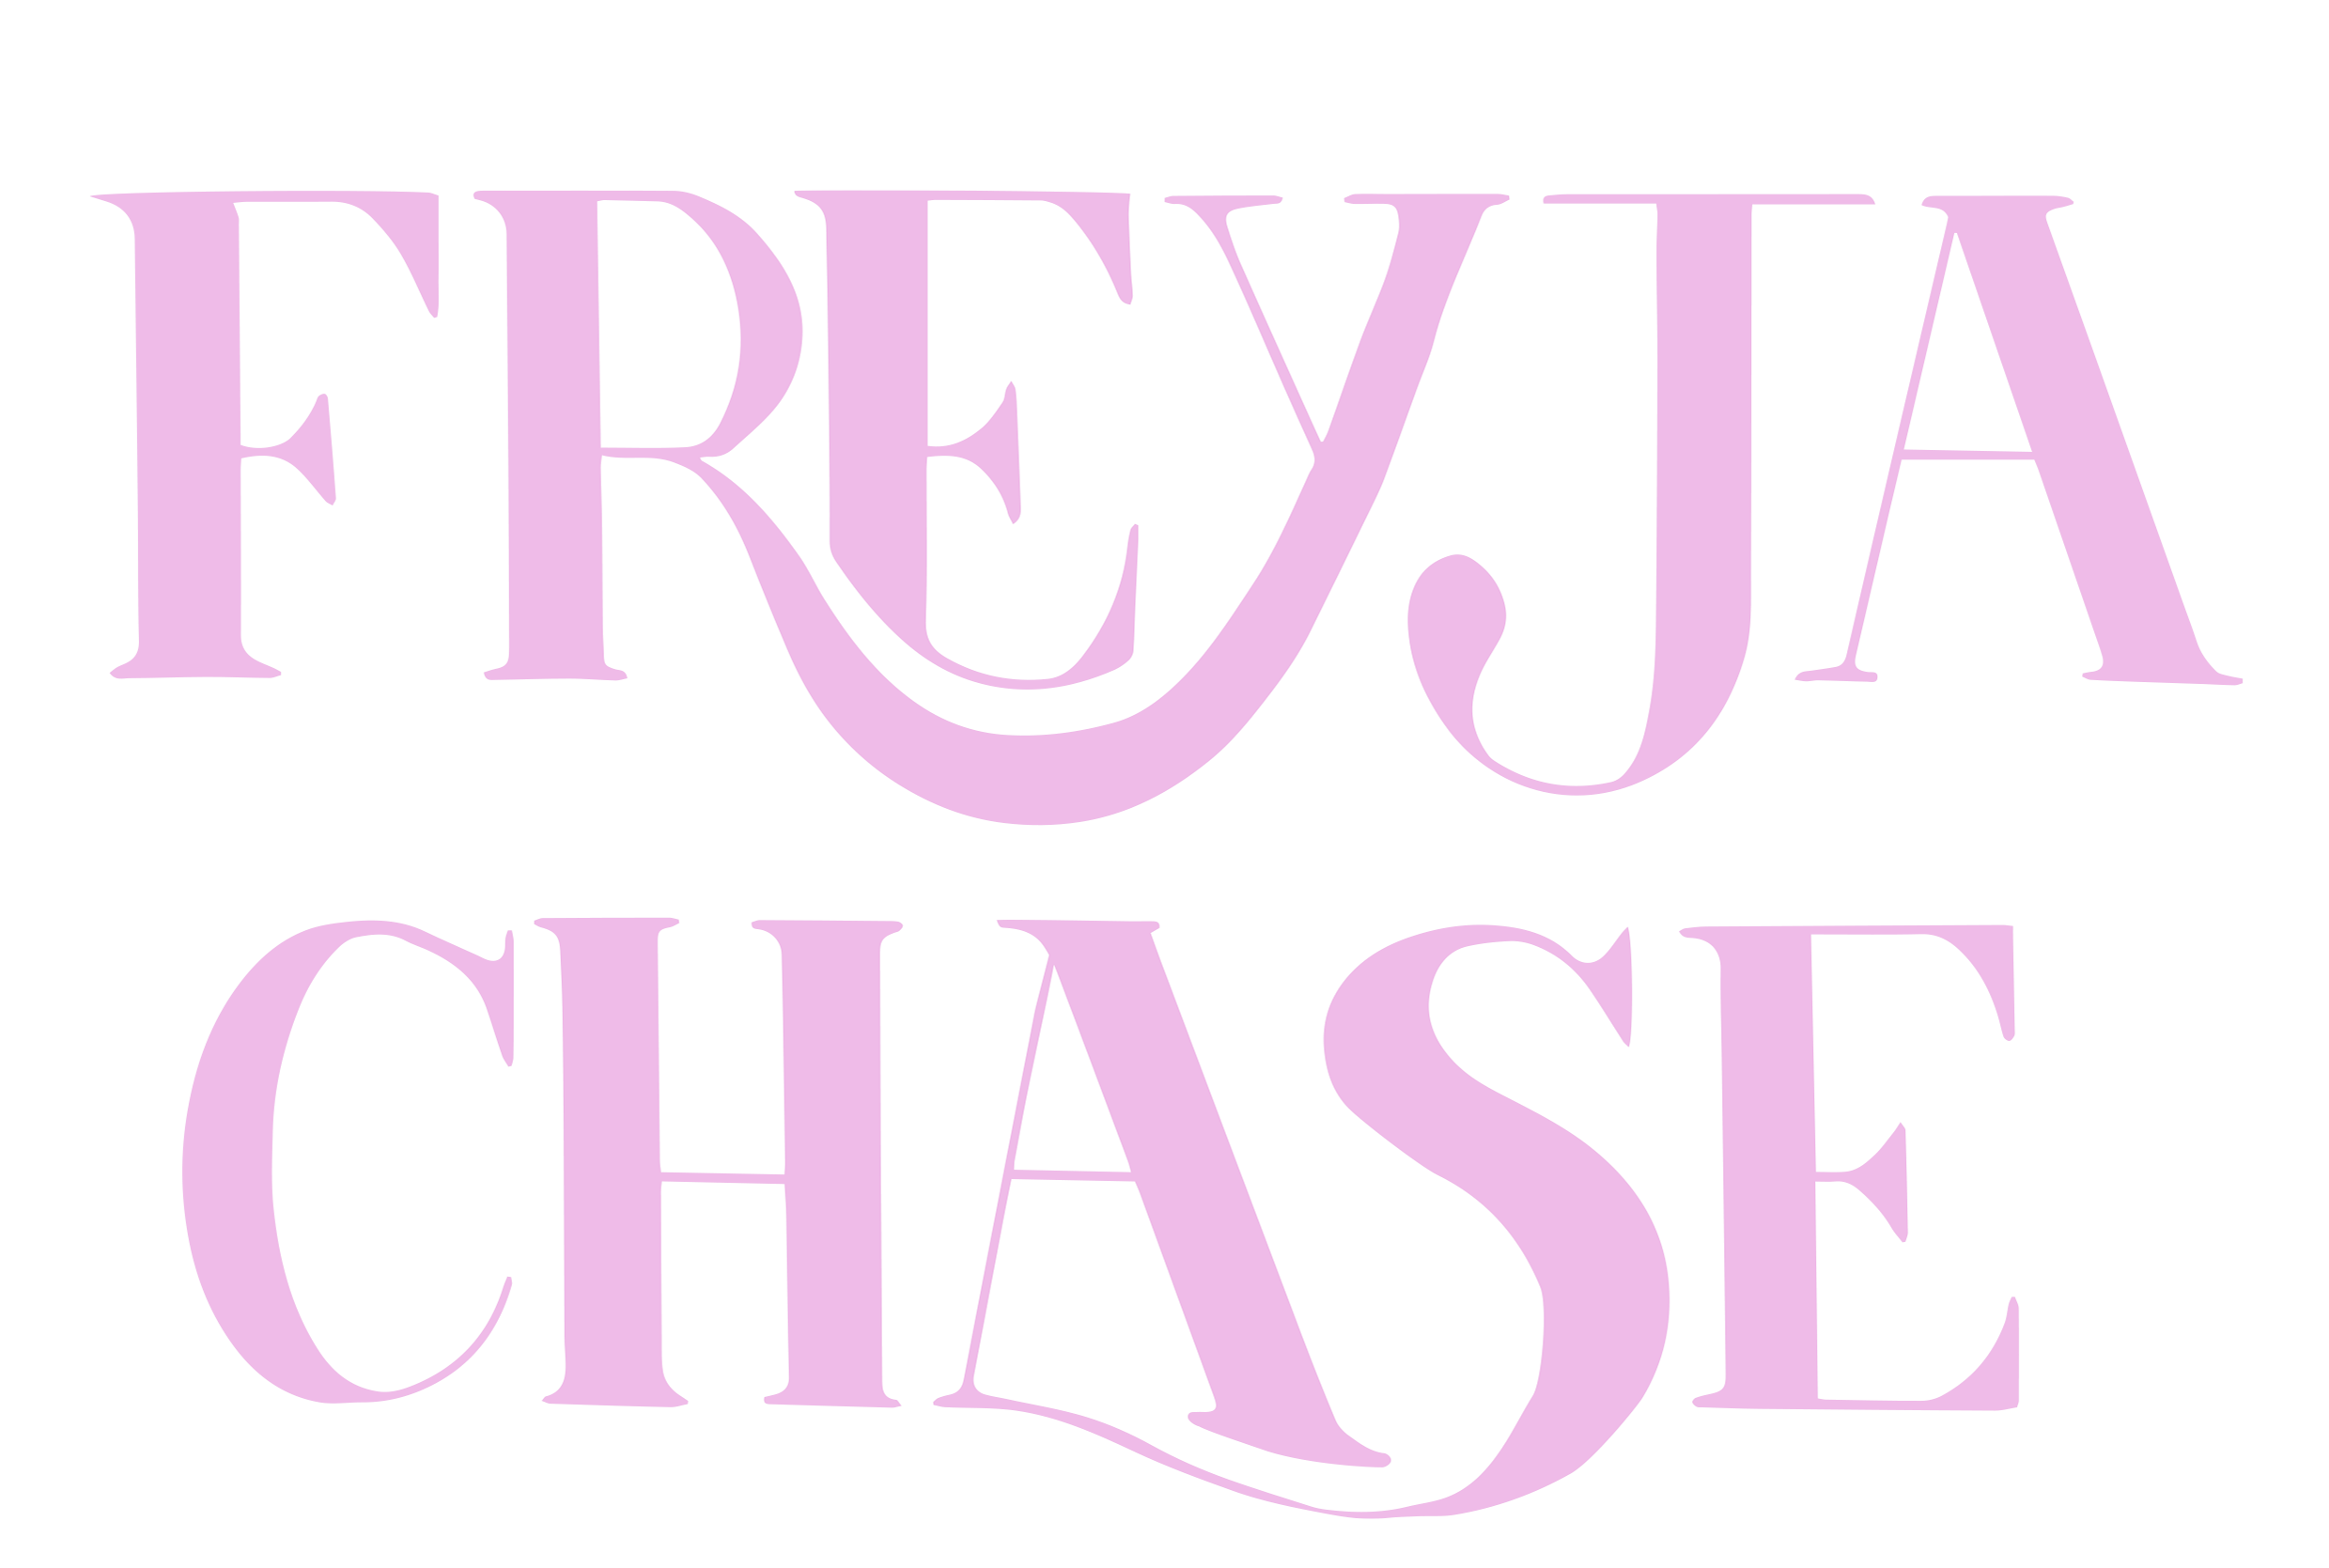 Freyja Chase